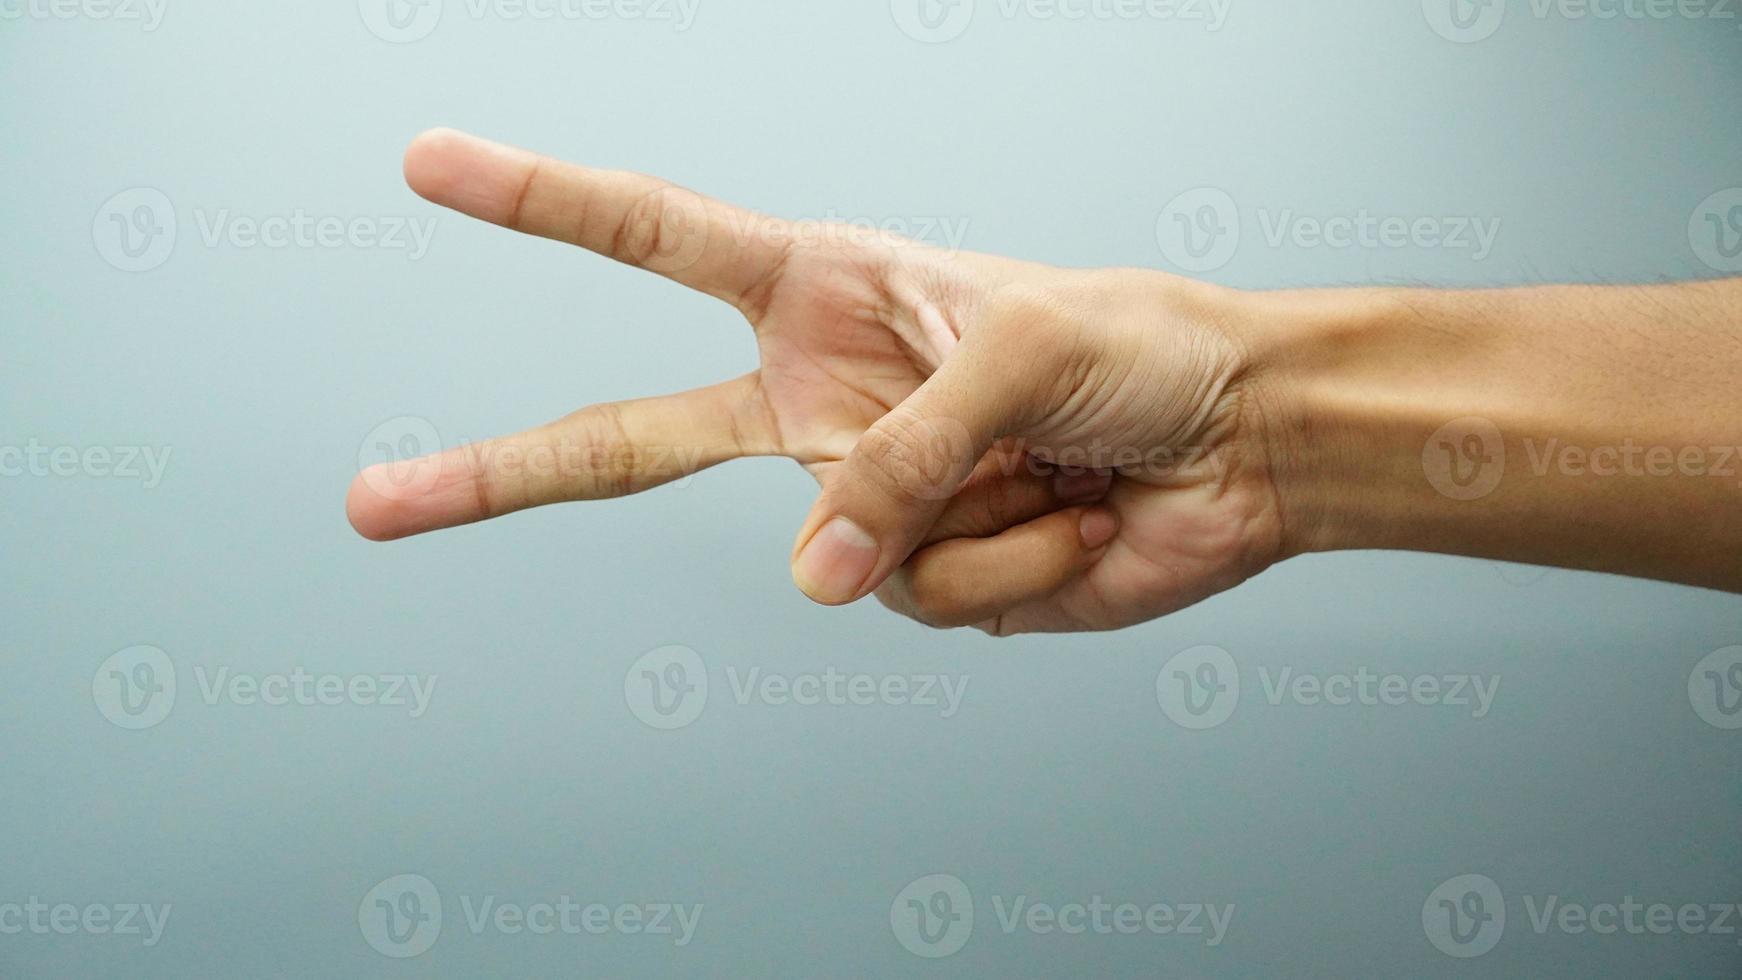 señal de victoria el gesto de la mano dos dedos levantados. imagen de alta definición foto